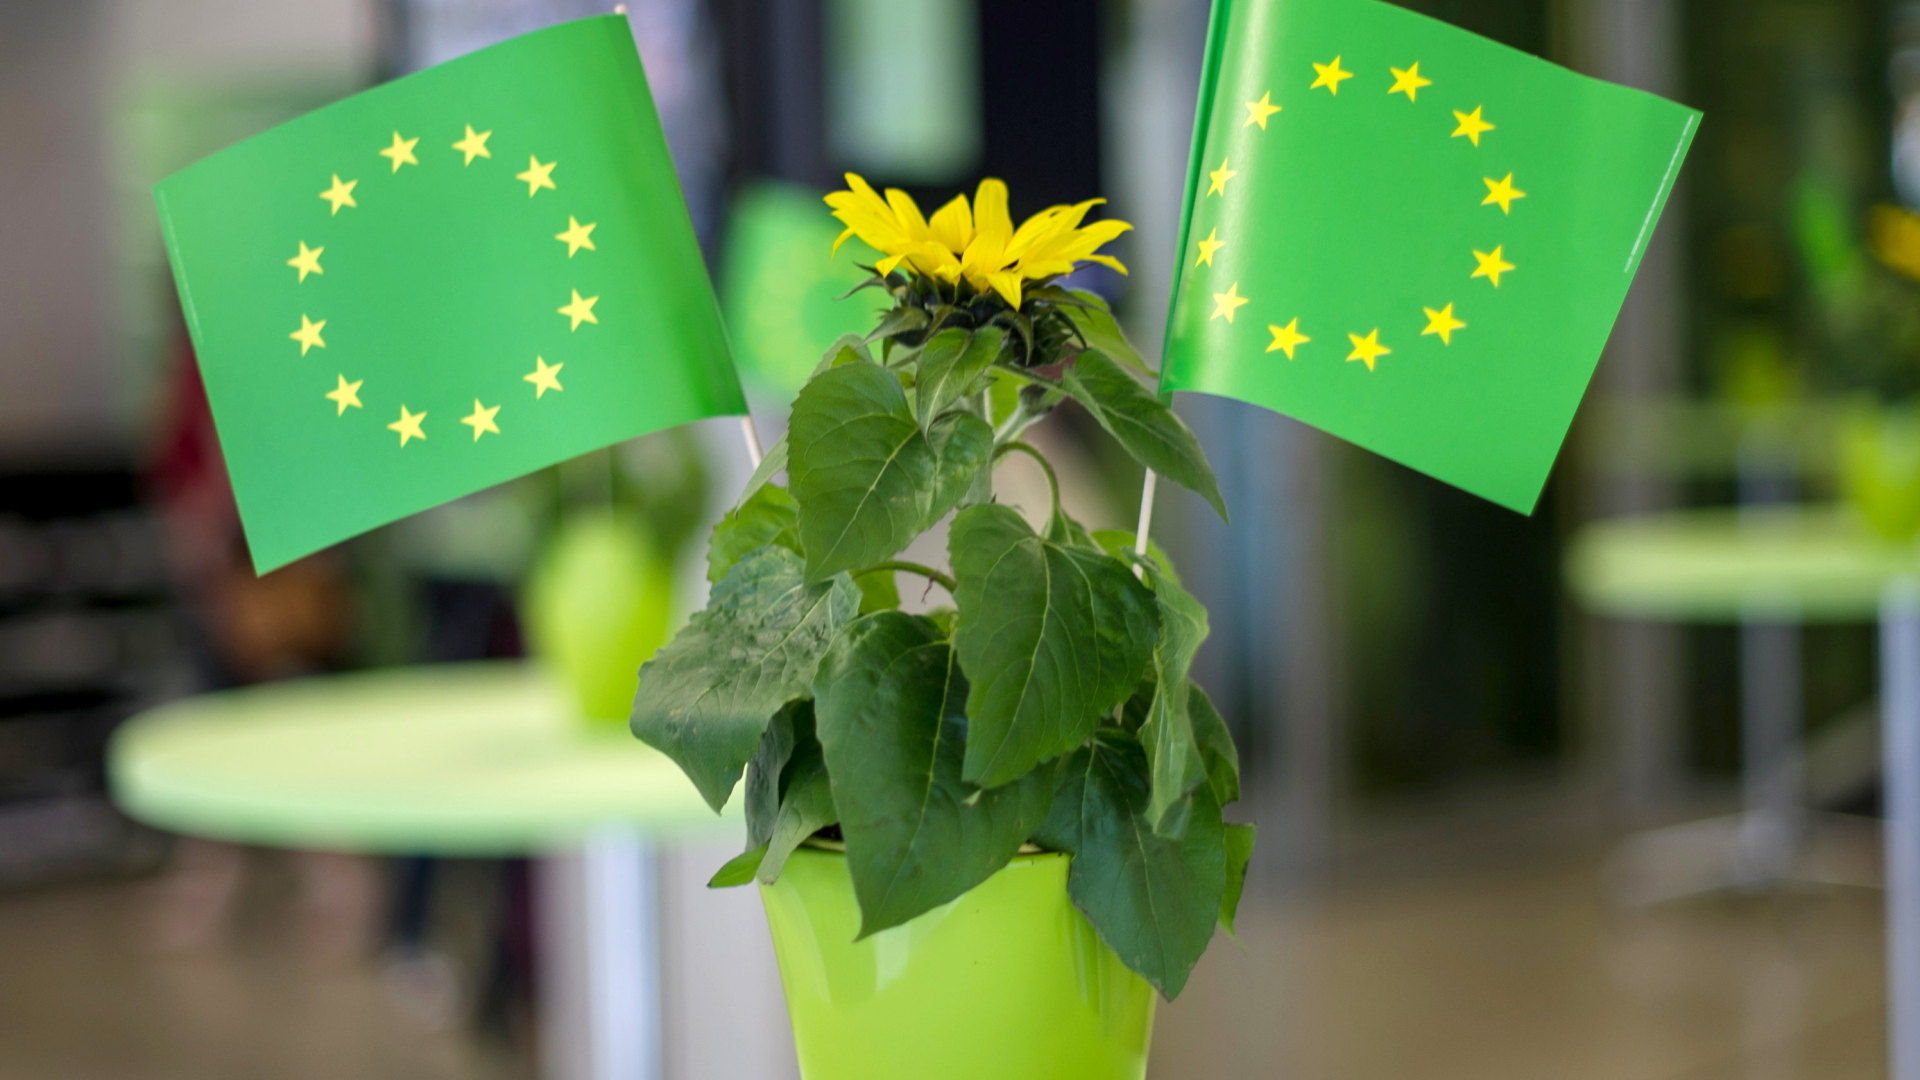 Blume und EU-Flaggen in Grün auf einer Wahlparty der Grünen (Archivbild vom 25.05.2014) | Bildquelle: dpa